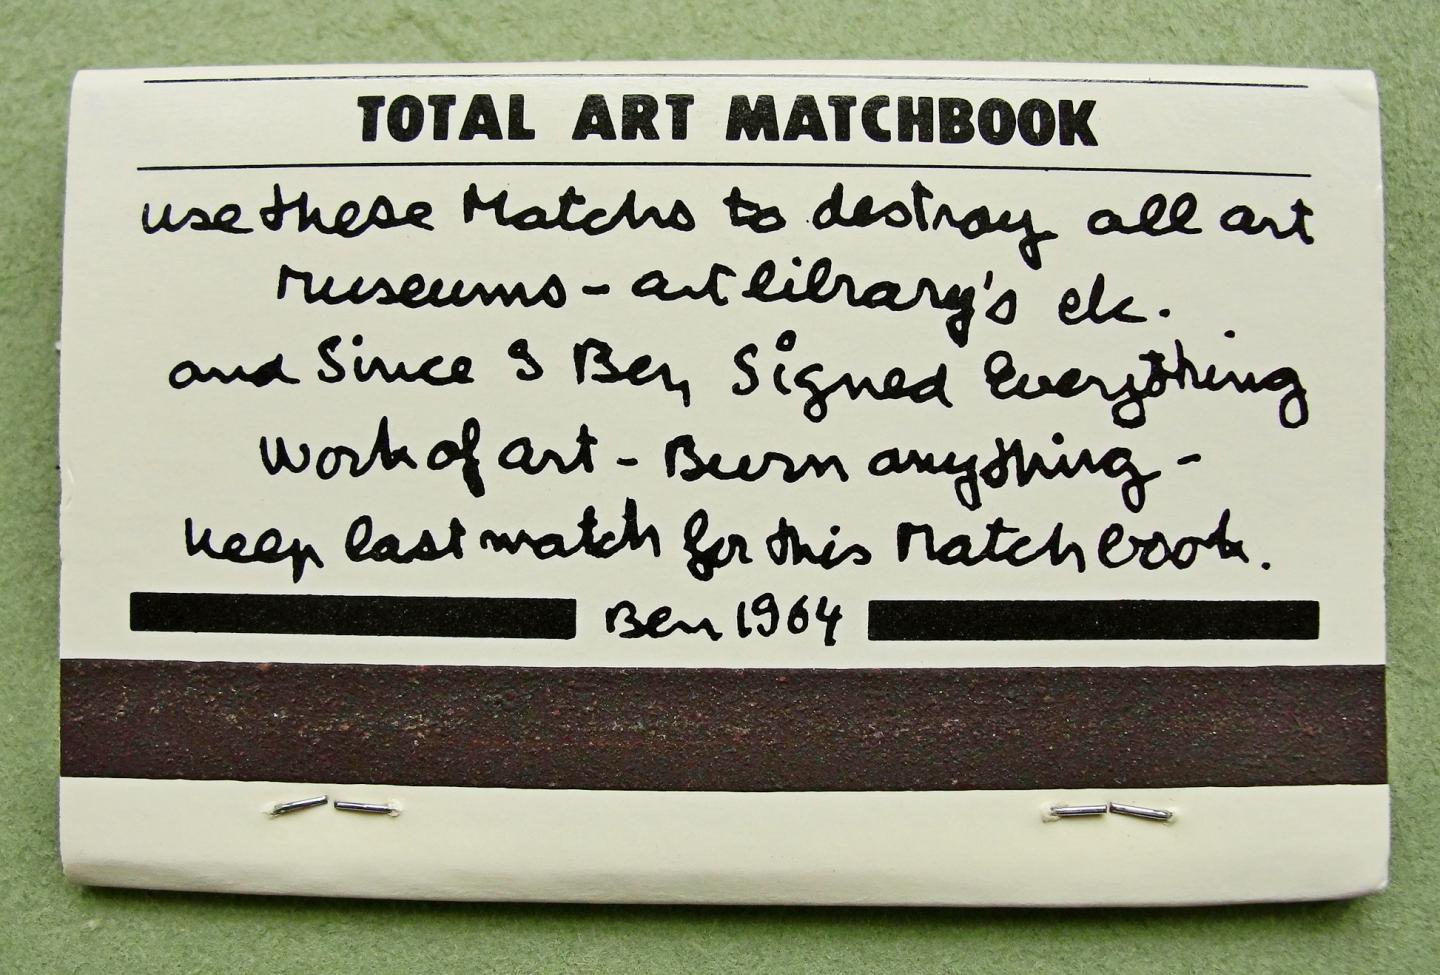 Vautier, BEN - Total Art Matchbook